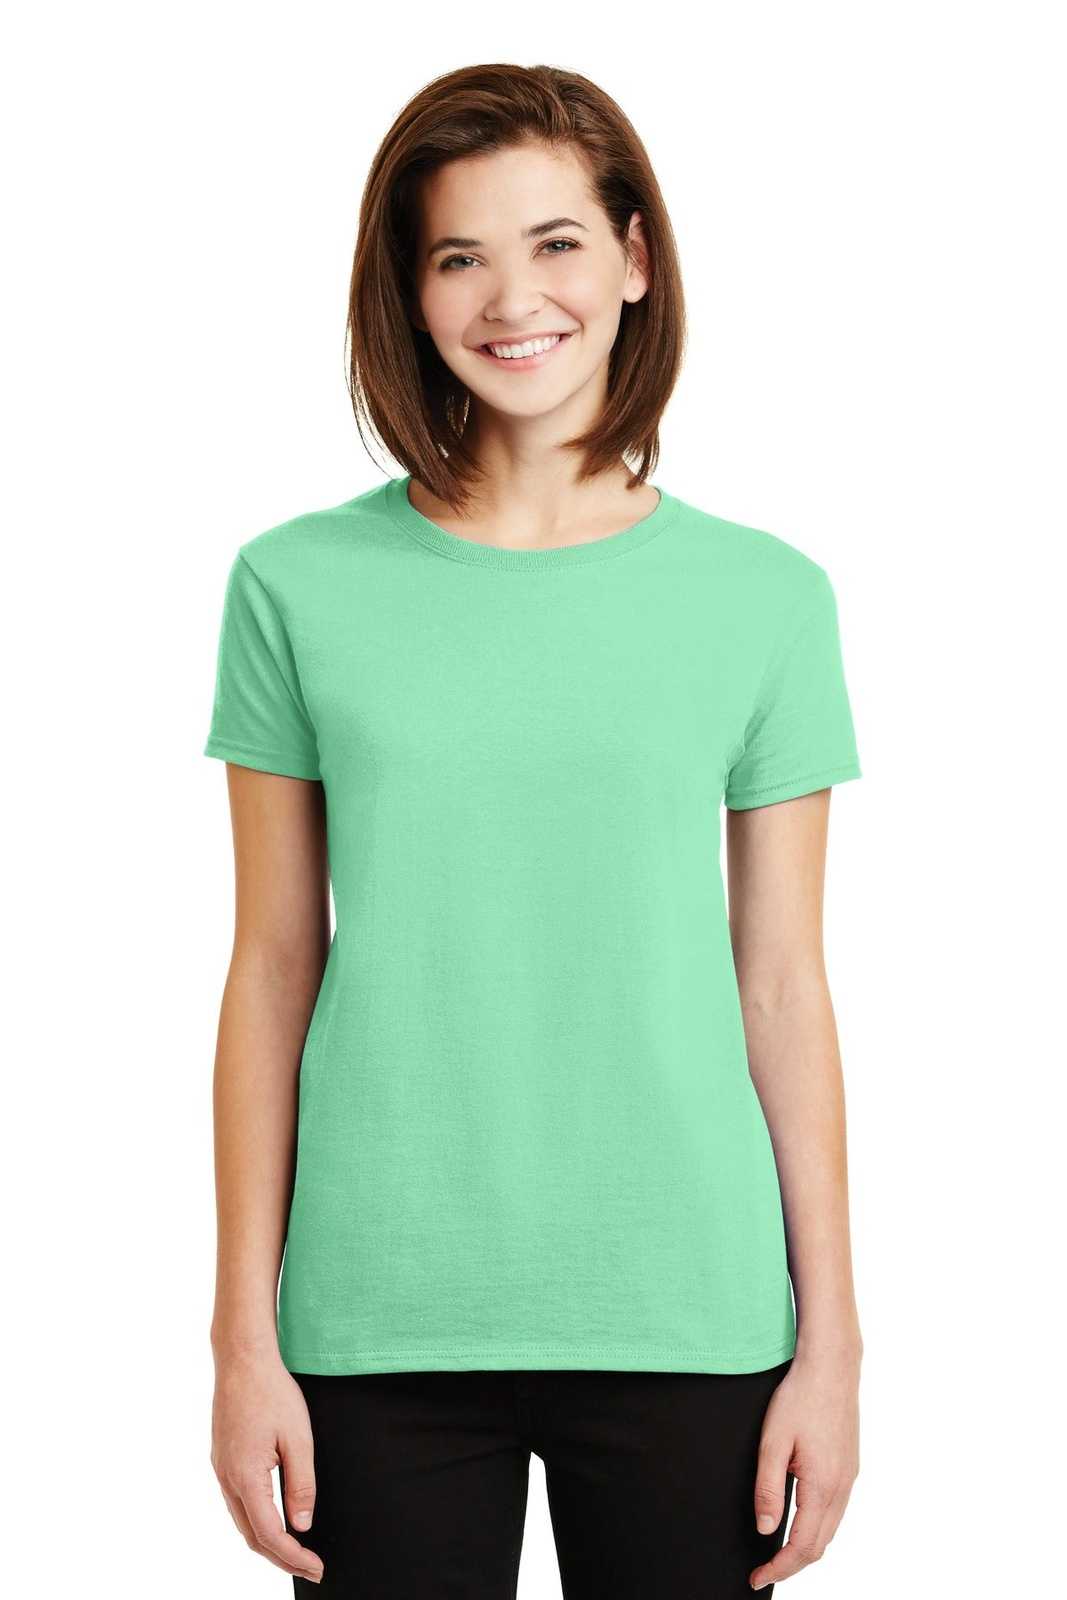 Gildan 2000L Ladies Ultra Cotton 100% Cotton T-Shirt - Mint Green - HIT a Double